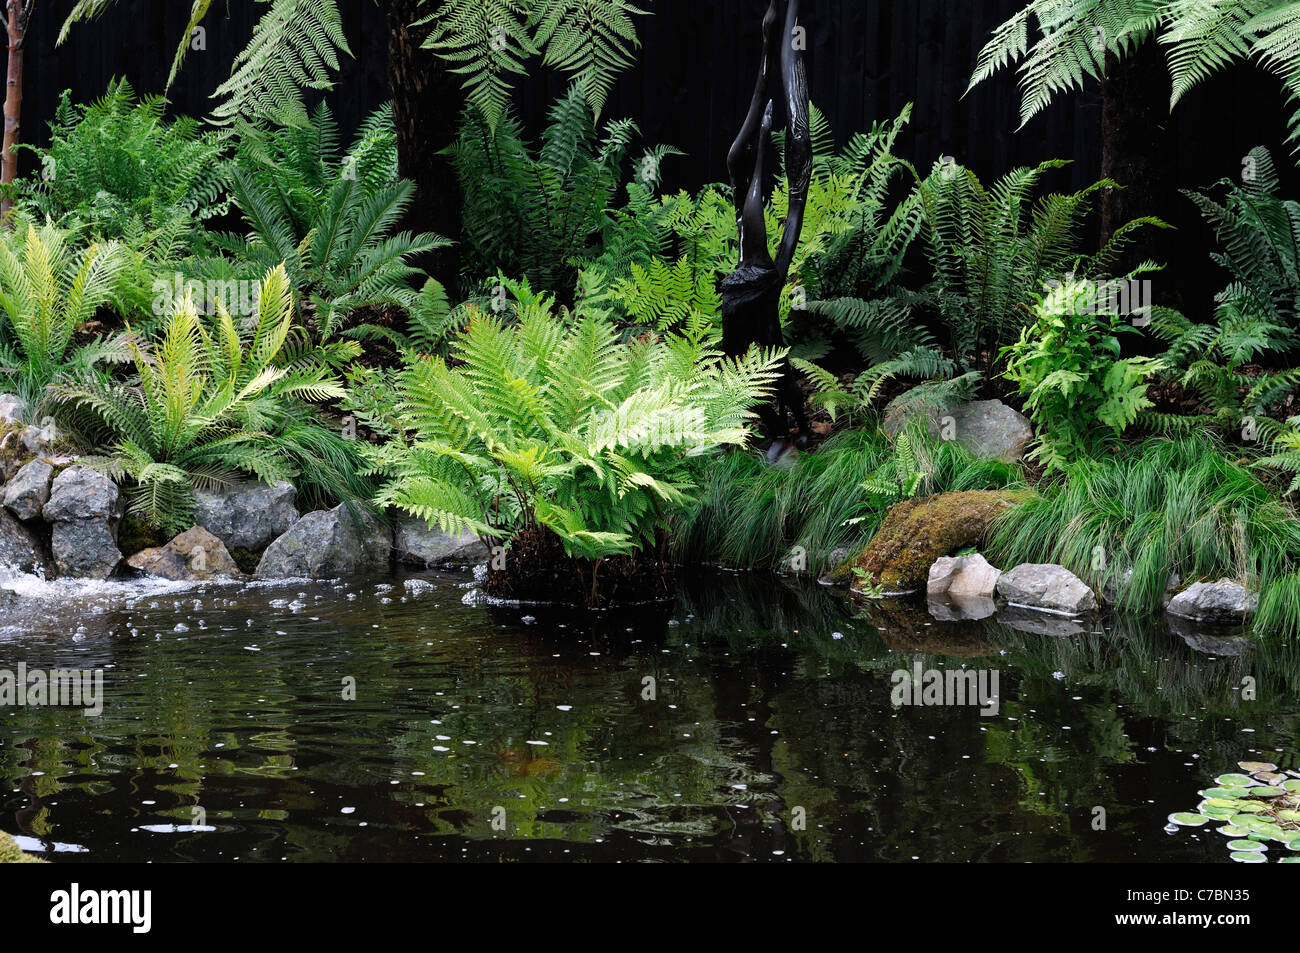 Farngarten gemischt Schatten schattige liebende Pflanzen neben Wasser Pool  Teich nassen Moorboden ruhigen ganz entspannt entspannende Umgebung  Stockfotografie - Alamy